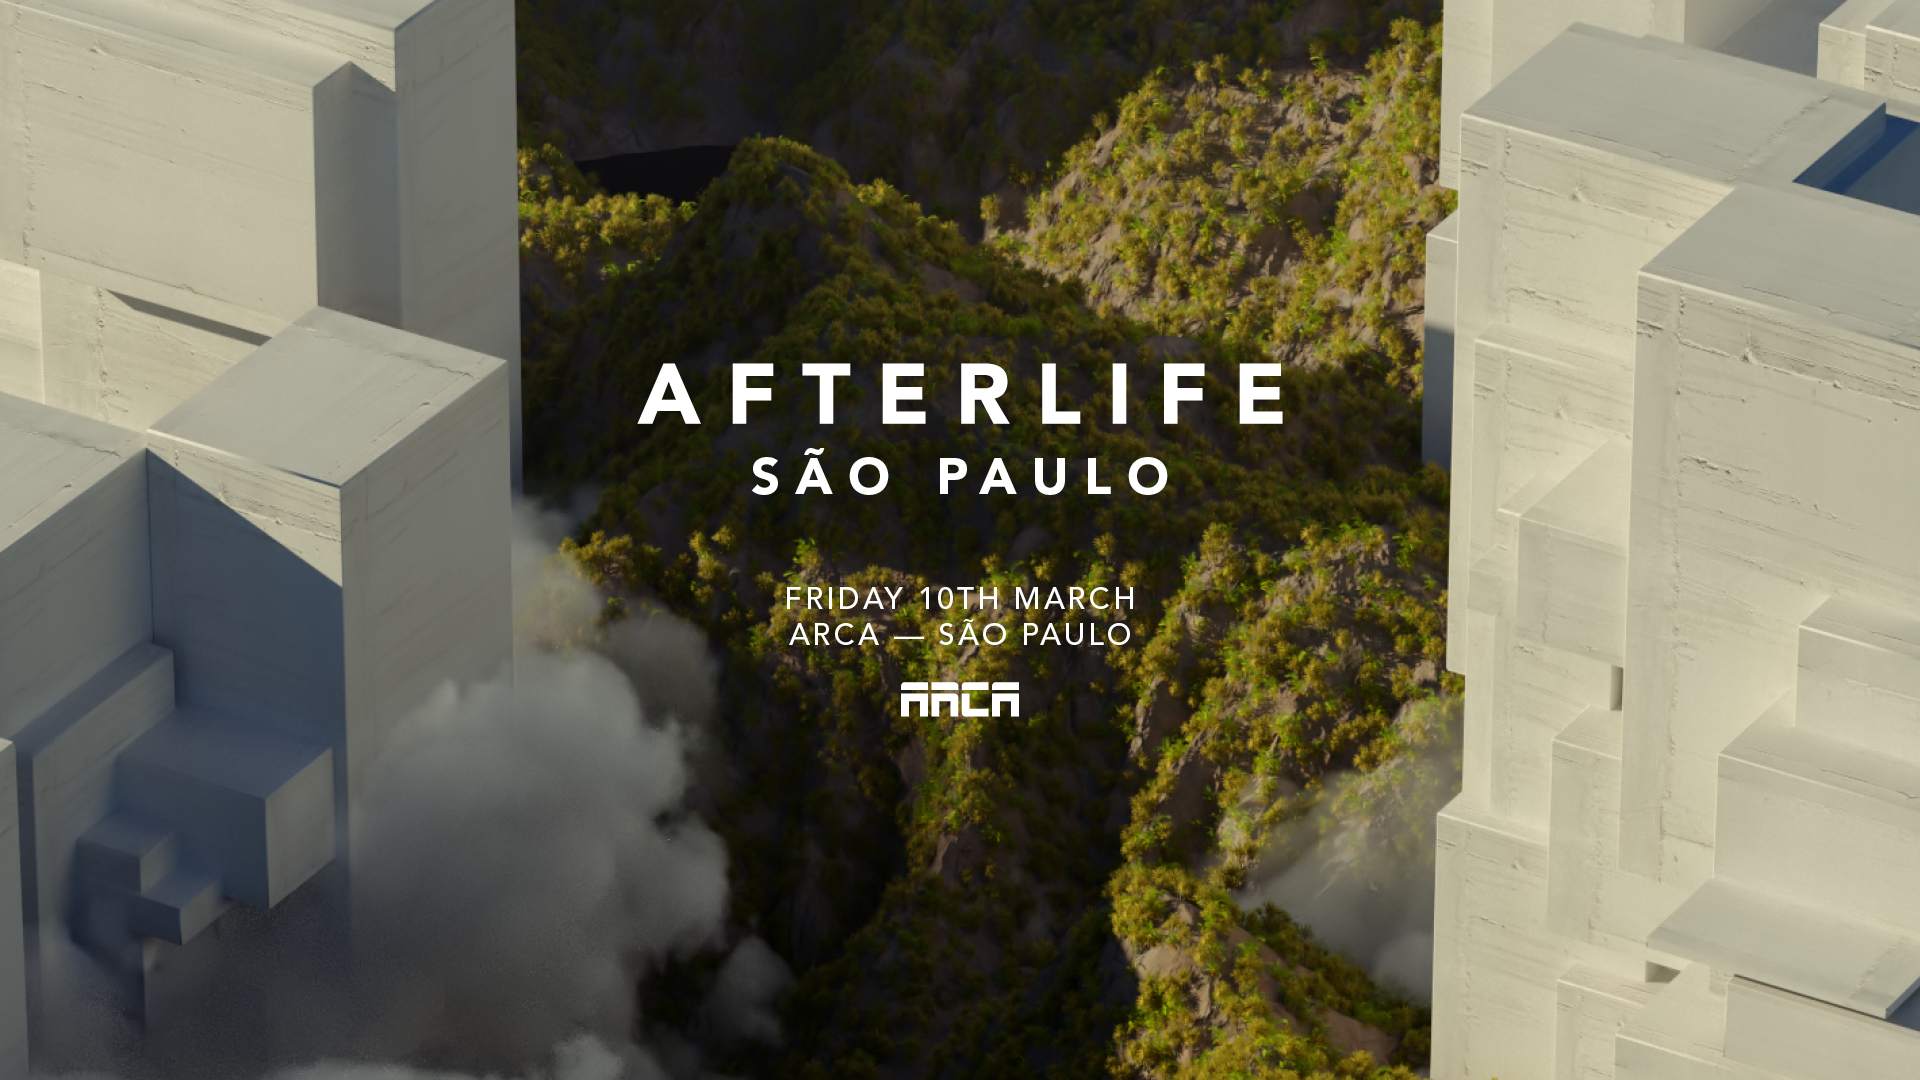 Confira o line up da Afterlife Brasil